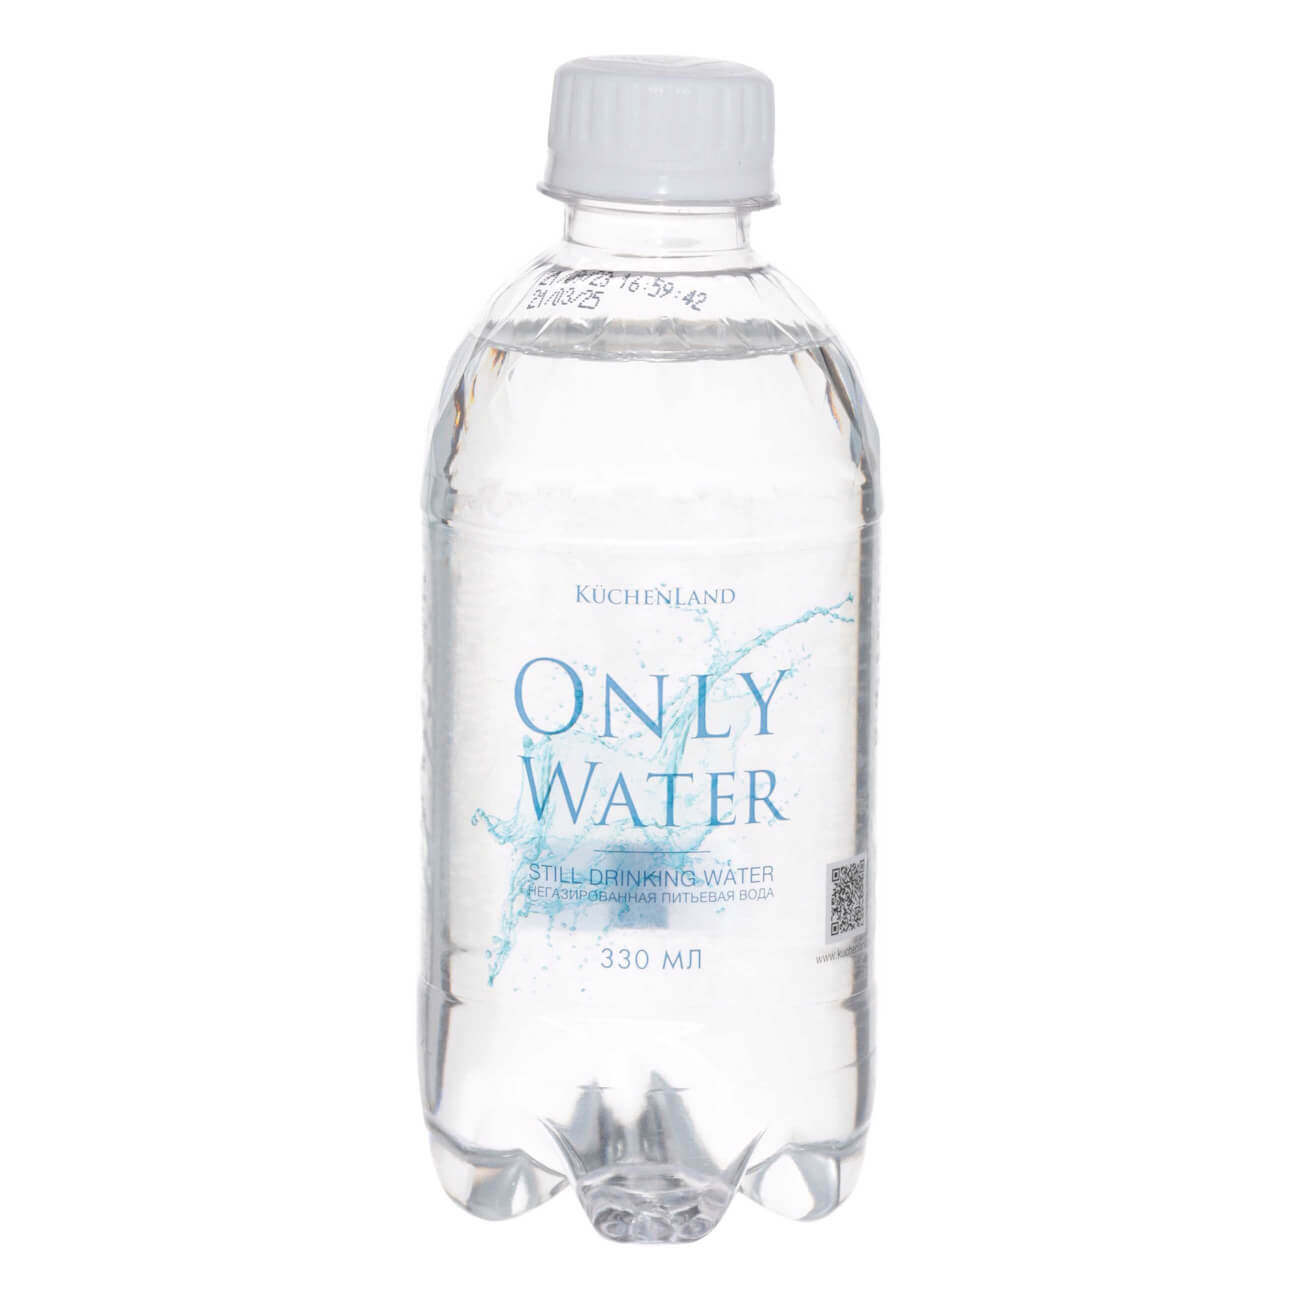 Вода, 330 мл, питьевая, негазированная, в бутылке, Only water